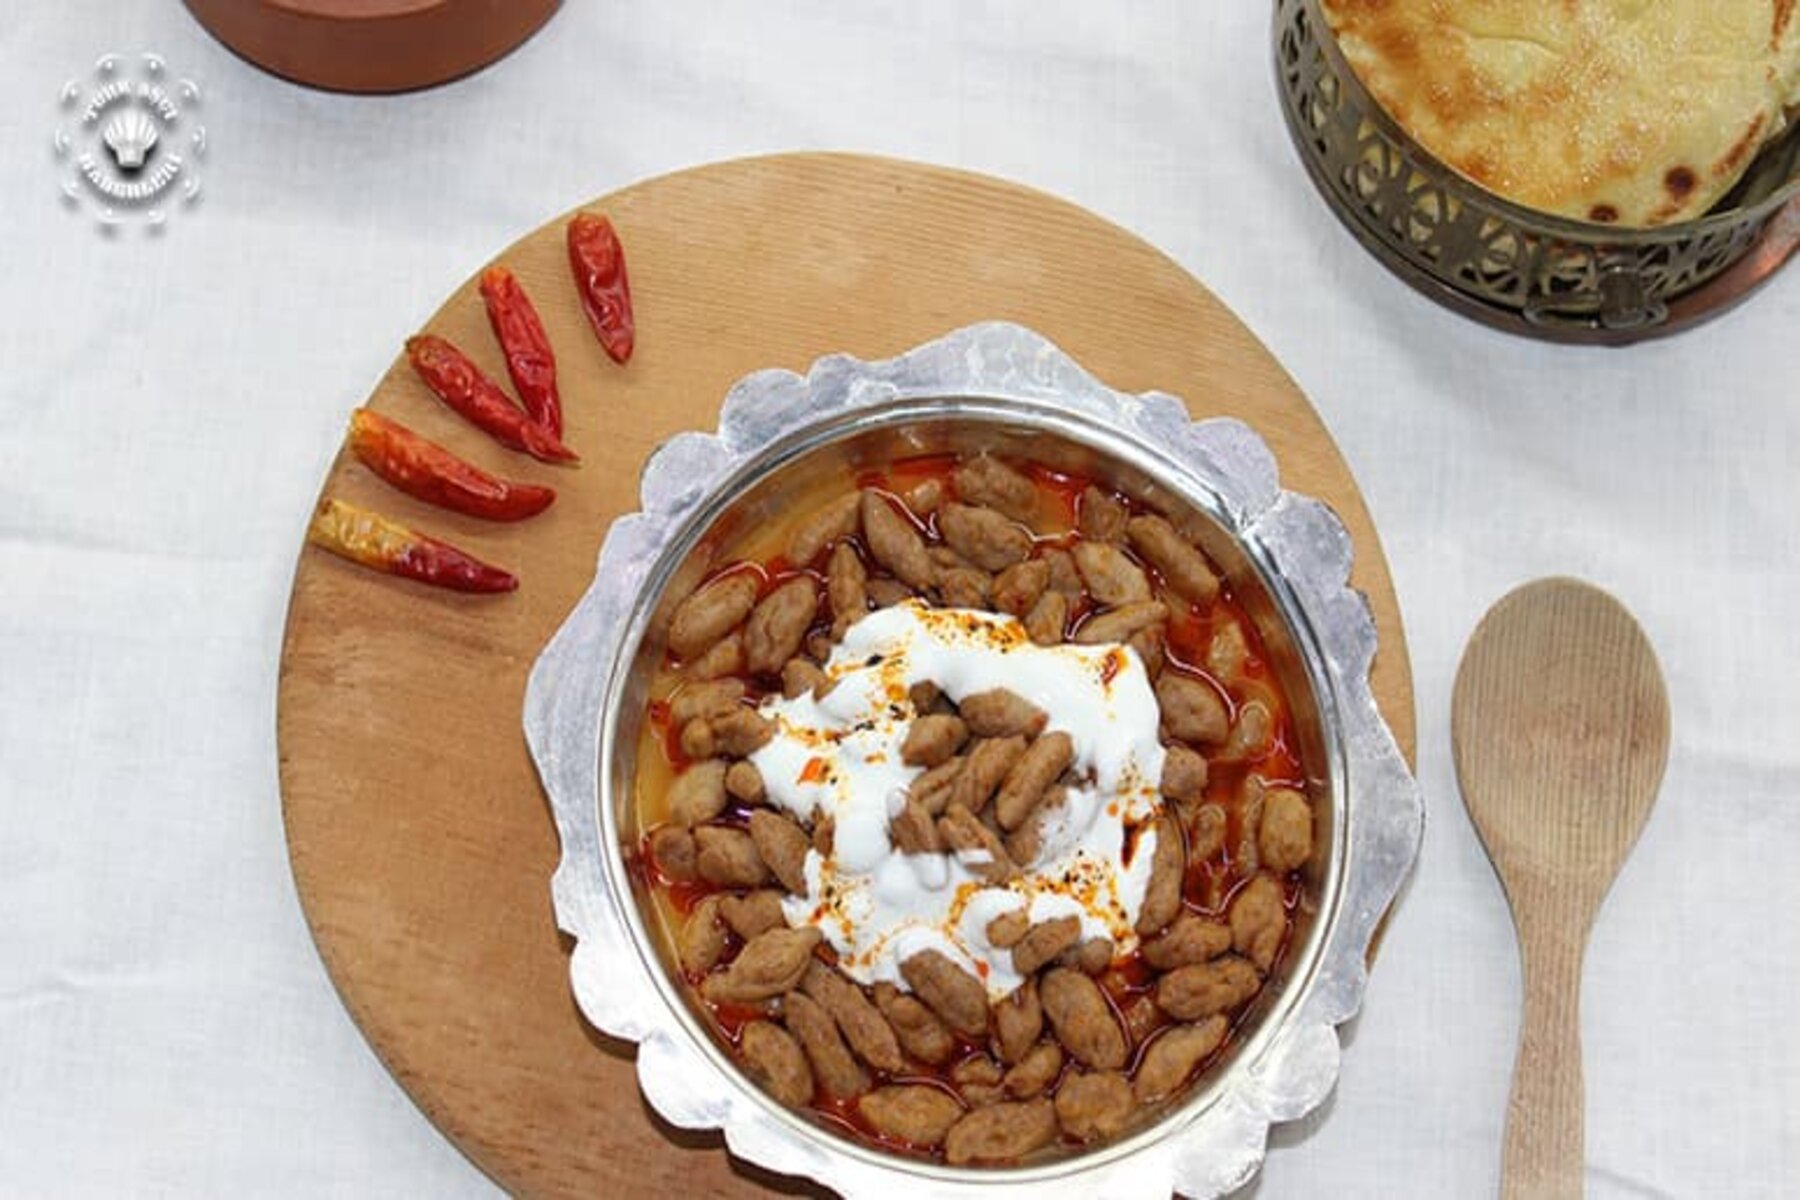 ويعد المطبخ التركي عموماً واحداً من أرقى المطابخ على مستوى العالم